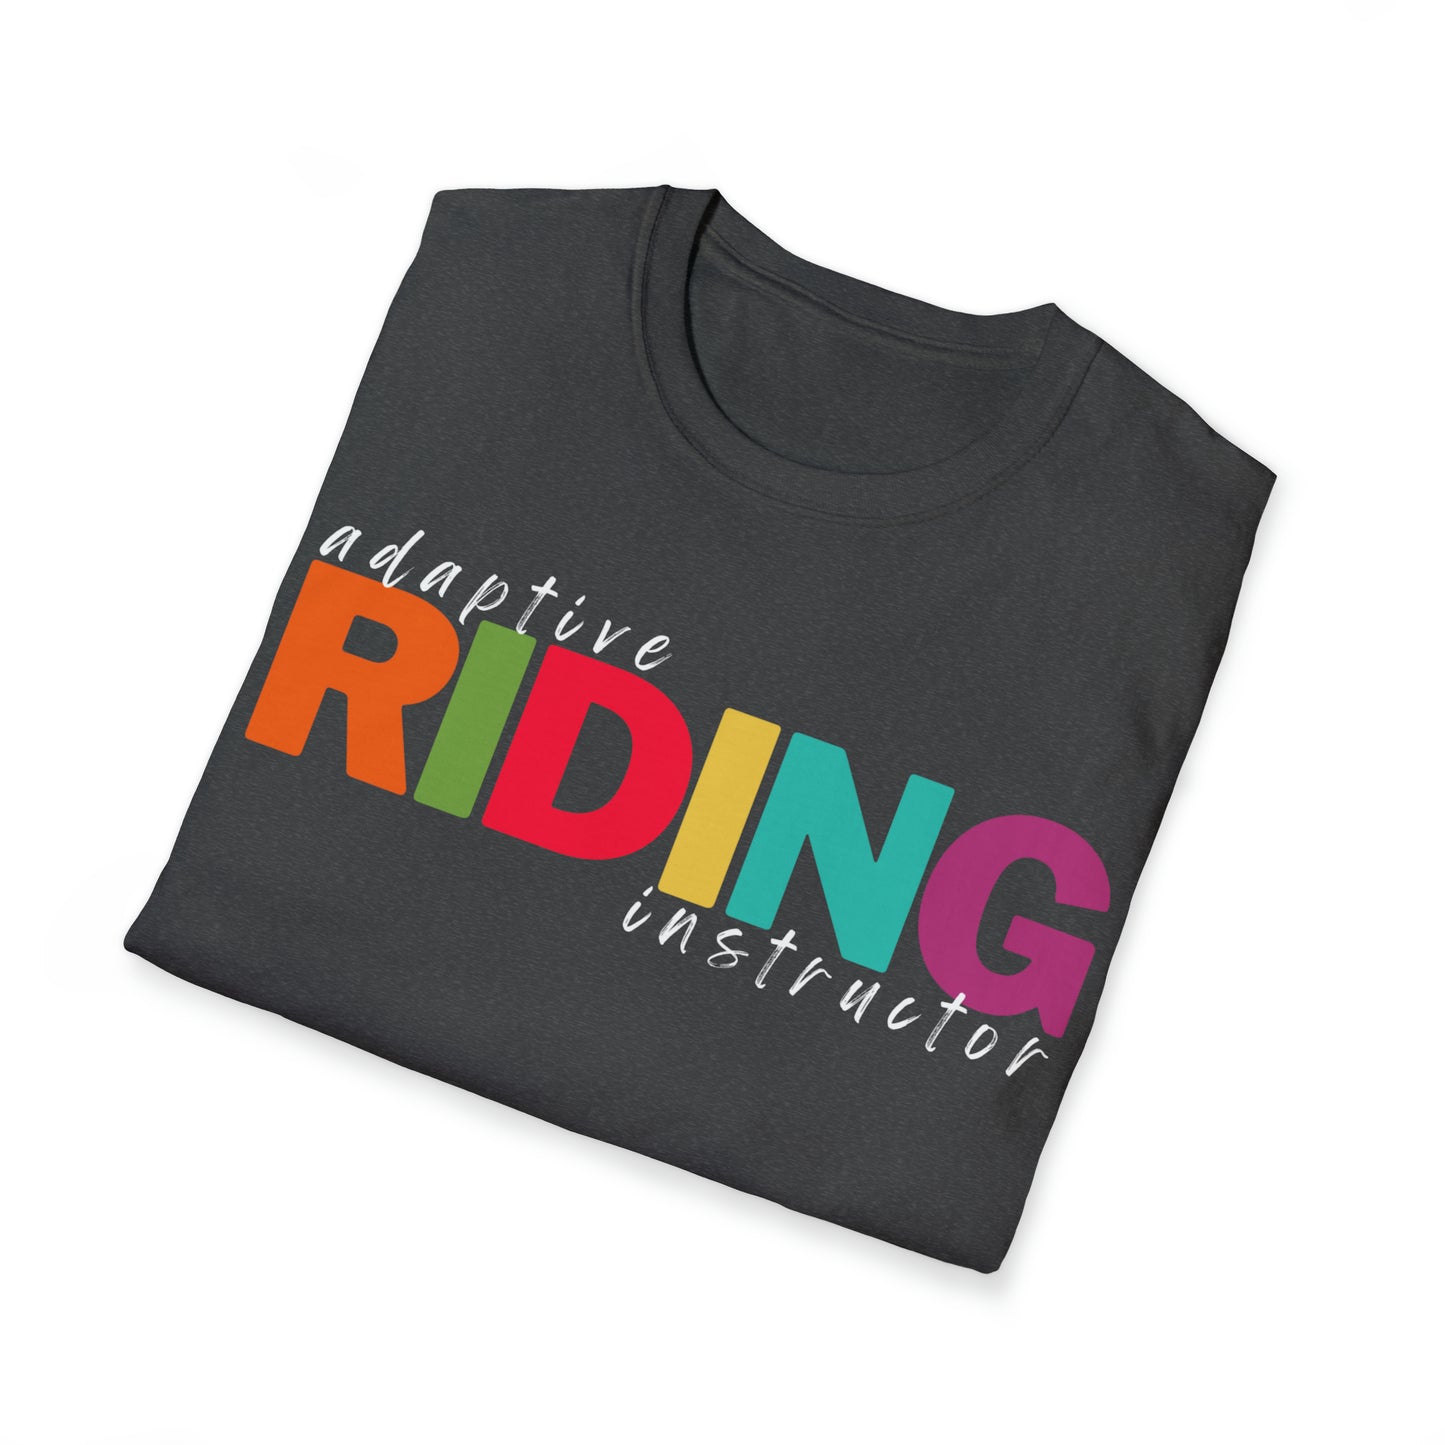 Adaptive Riding Instructor Shirt - Unisex short sleeve t-shirt